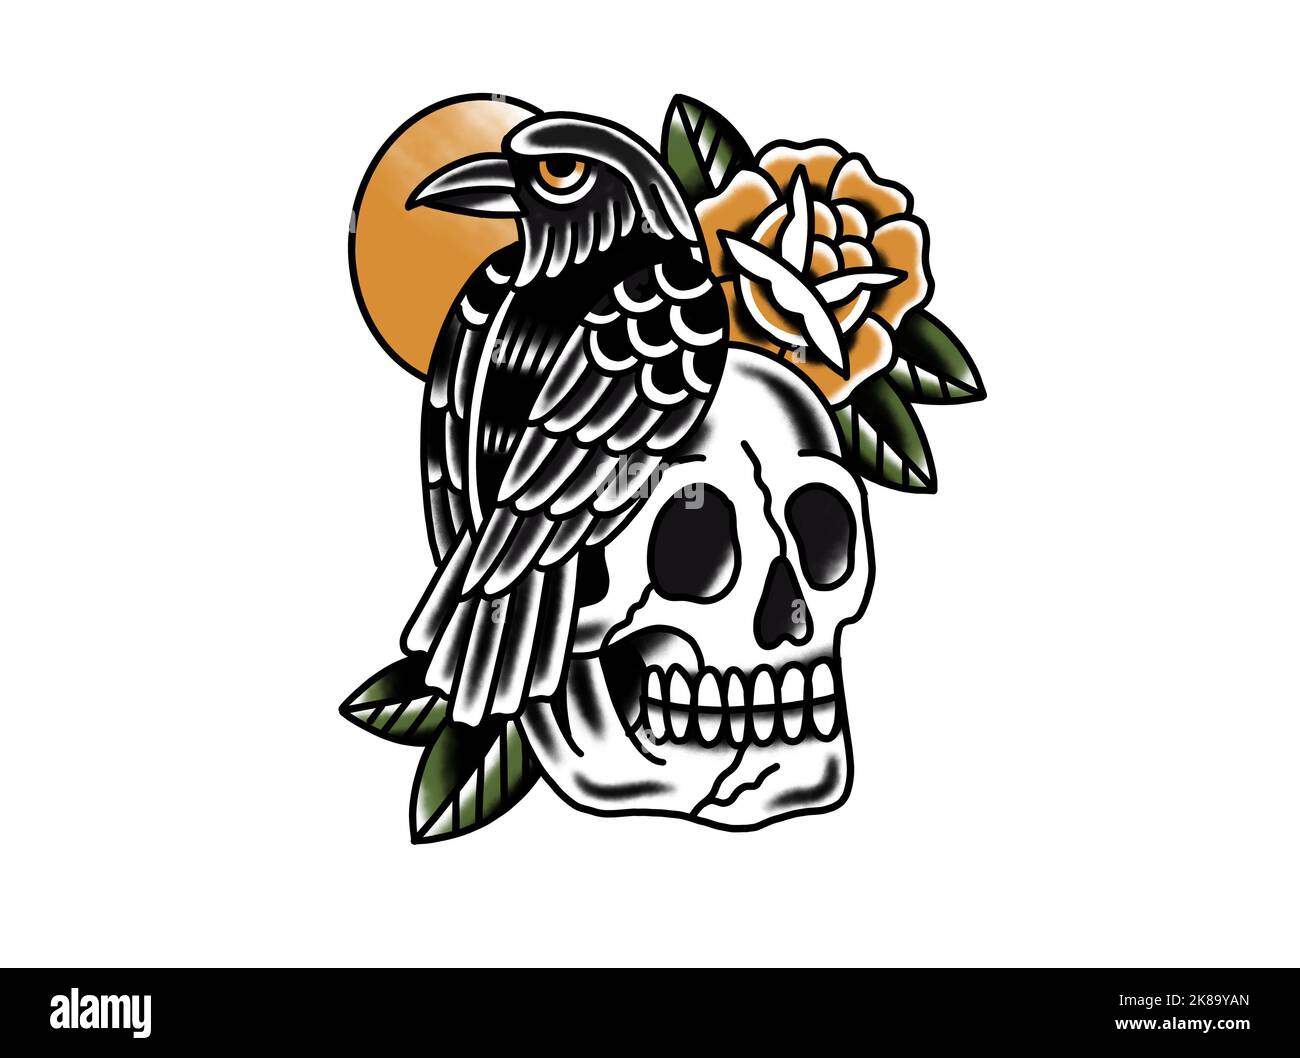 Old School traditionnel tatouage inspiré cool design graphique illustration Crow assis sur le crâne humain pour la marchandise t-shirts autocollants fonds d'écran Banque D'Images